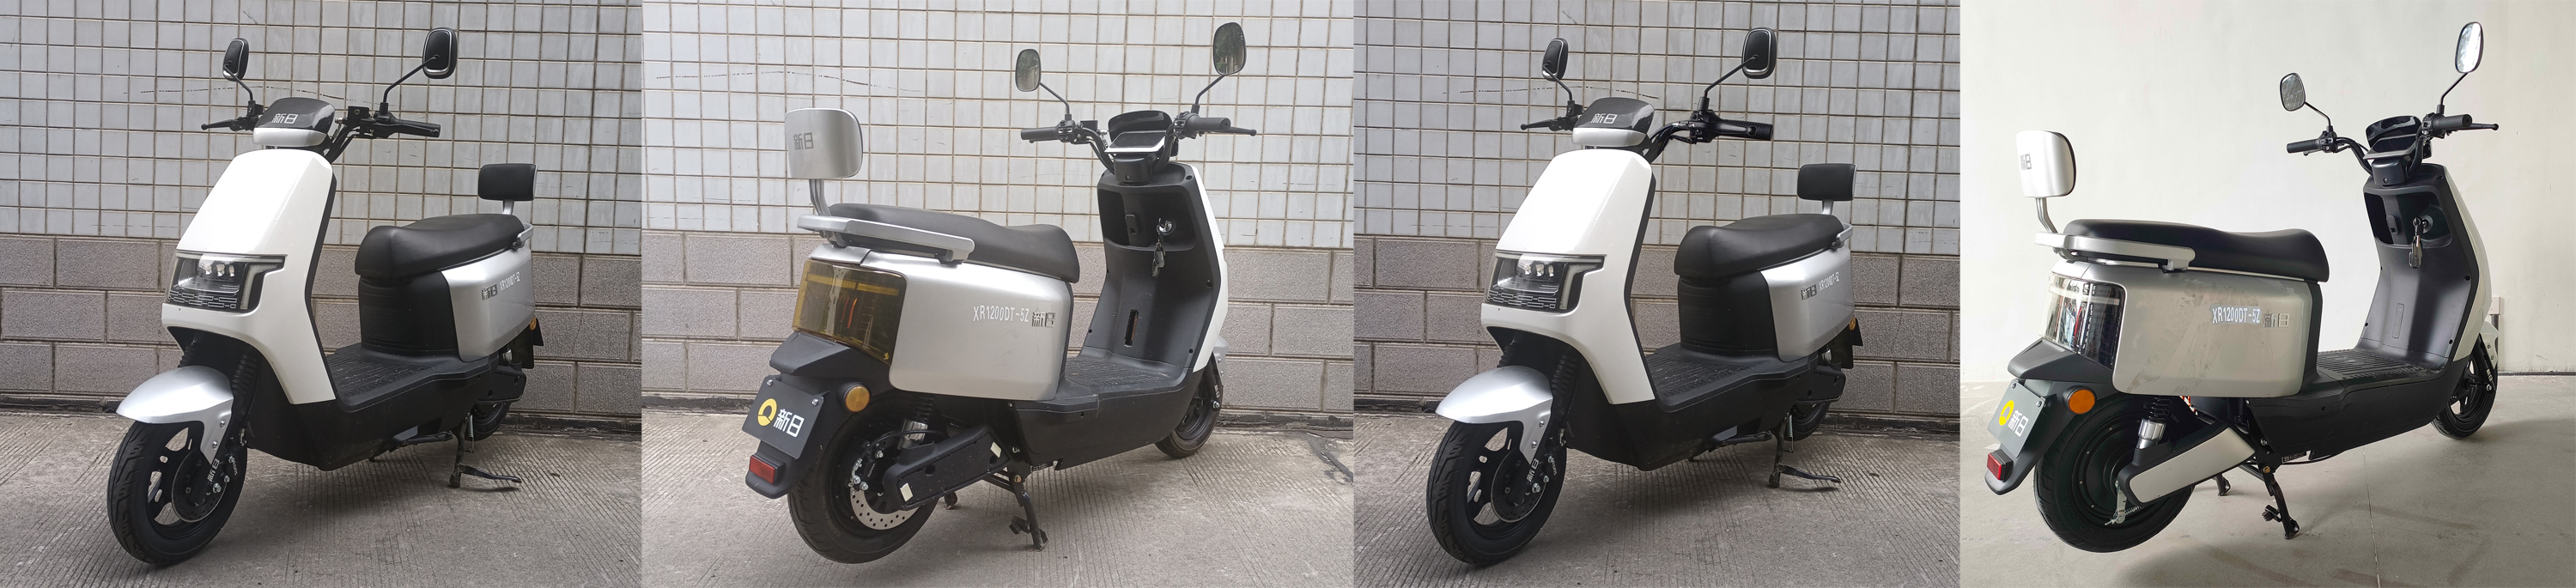 XR1200DT-5Z 新日牌纯电动前盘式后盘式/鼓式电动两轮摩托车图片